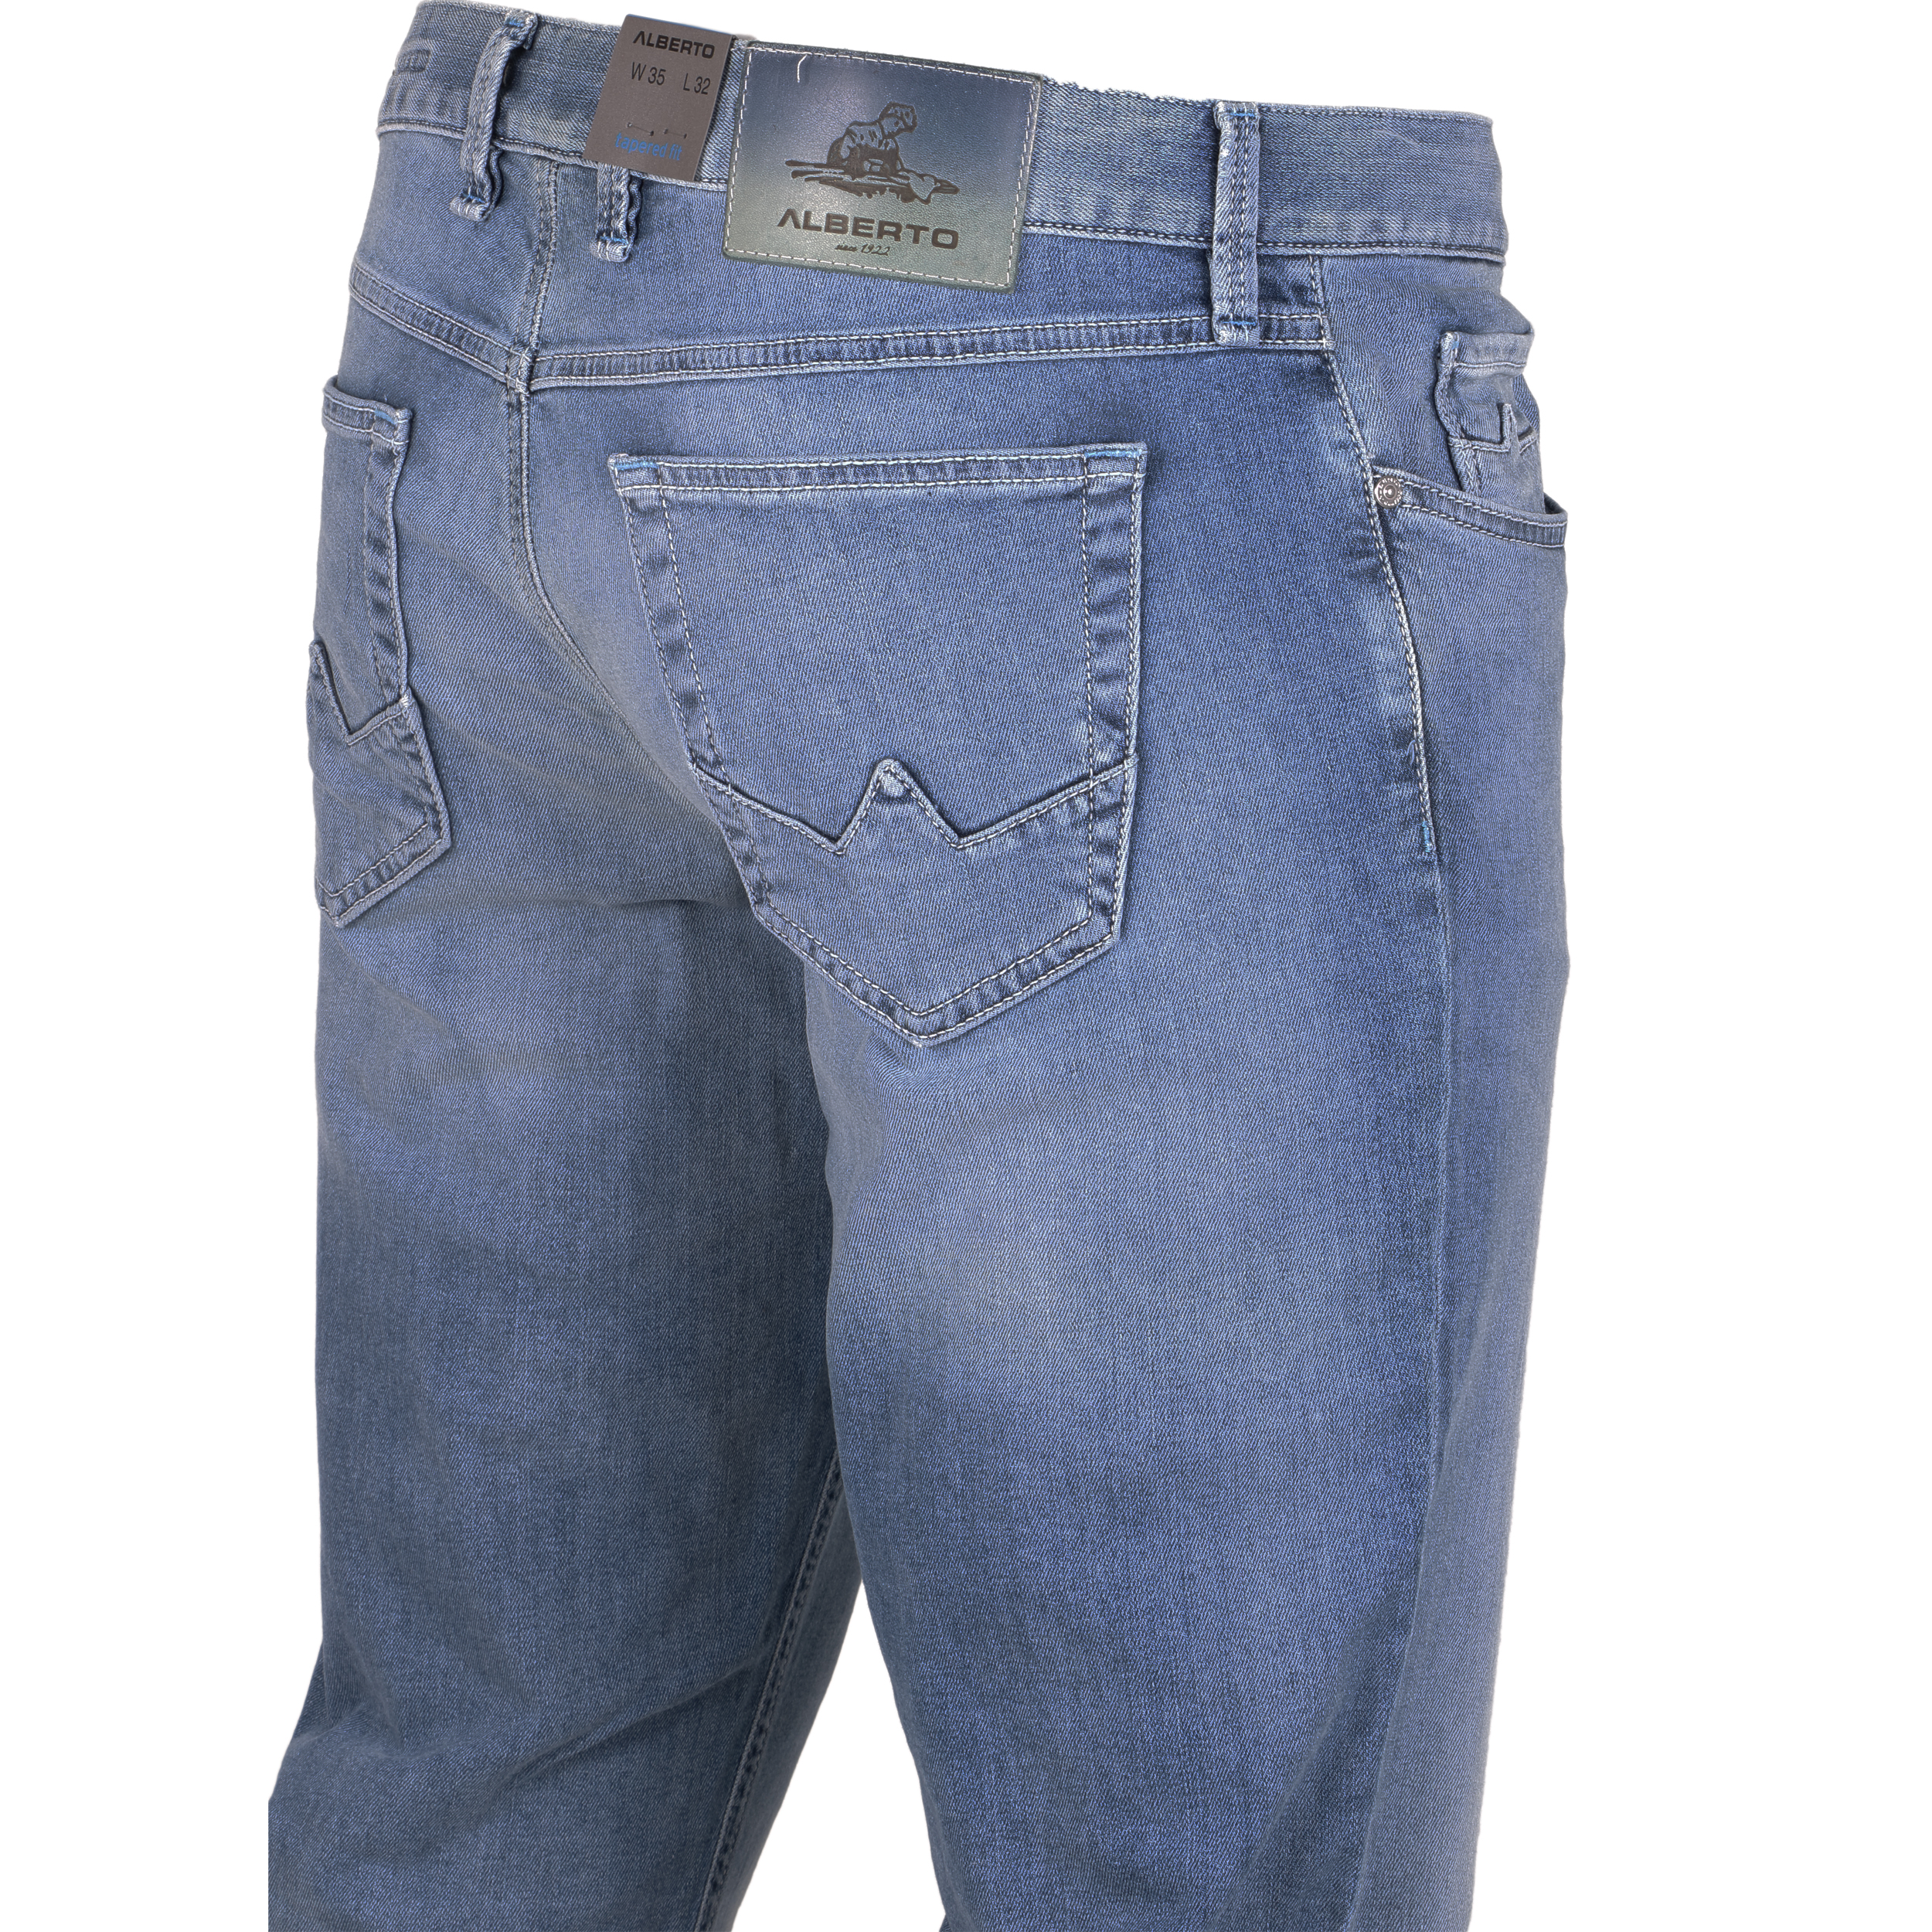 Alberto Herren Jeans Slipe Vintage - hellblau 31/32